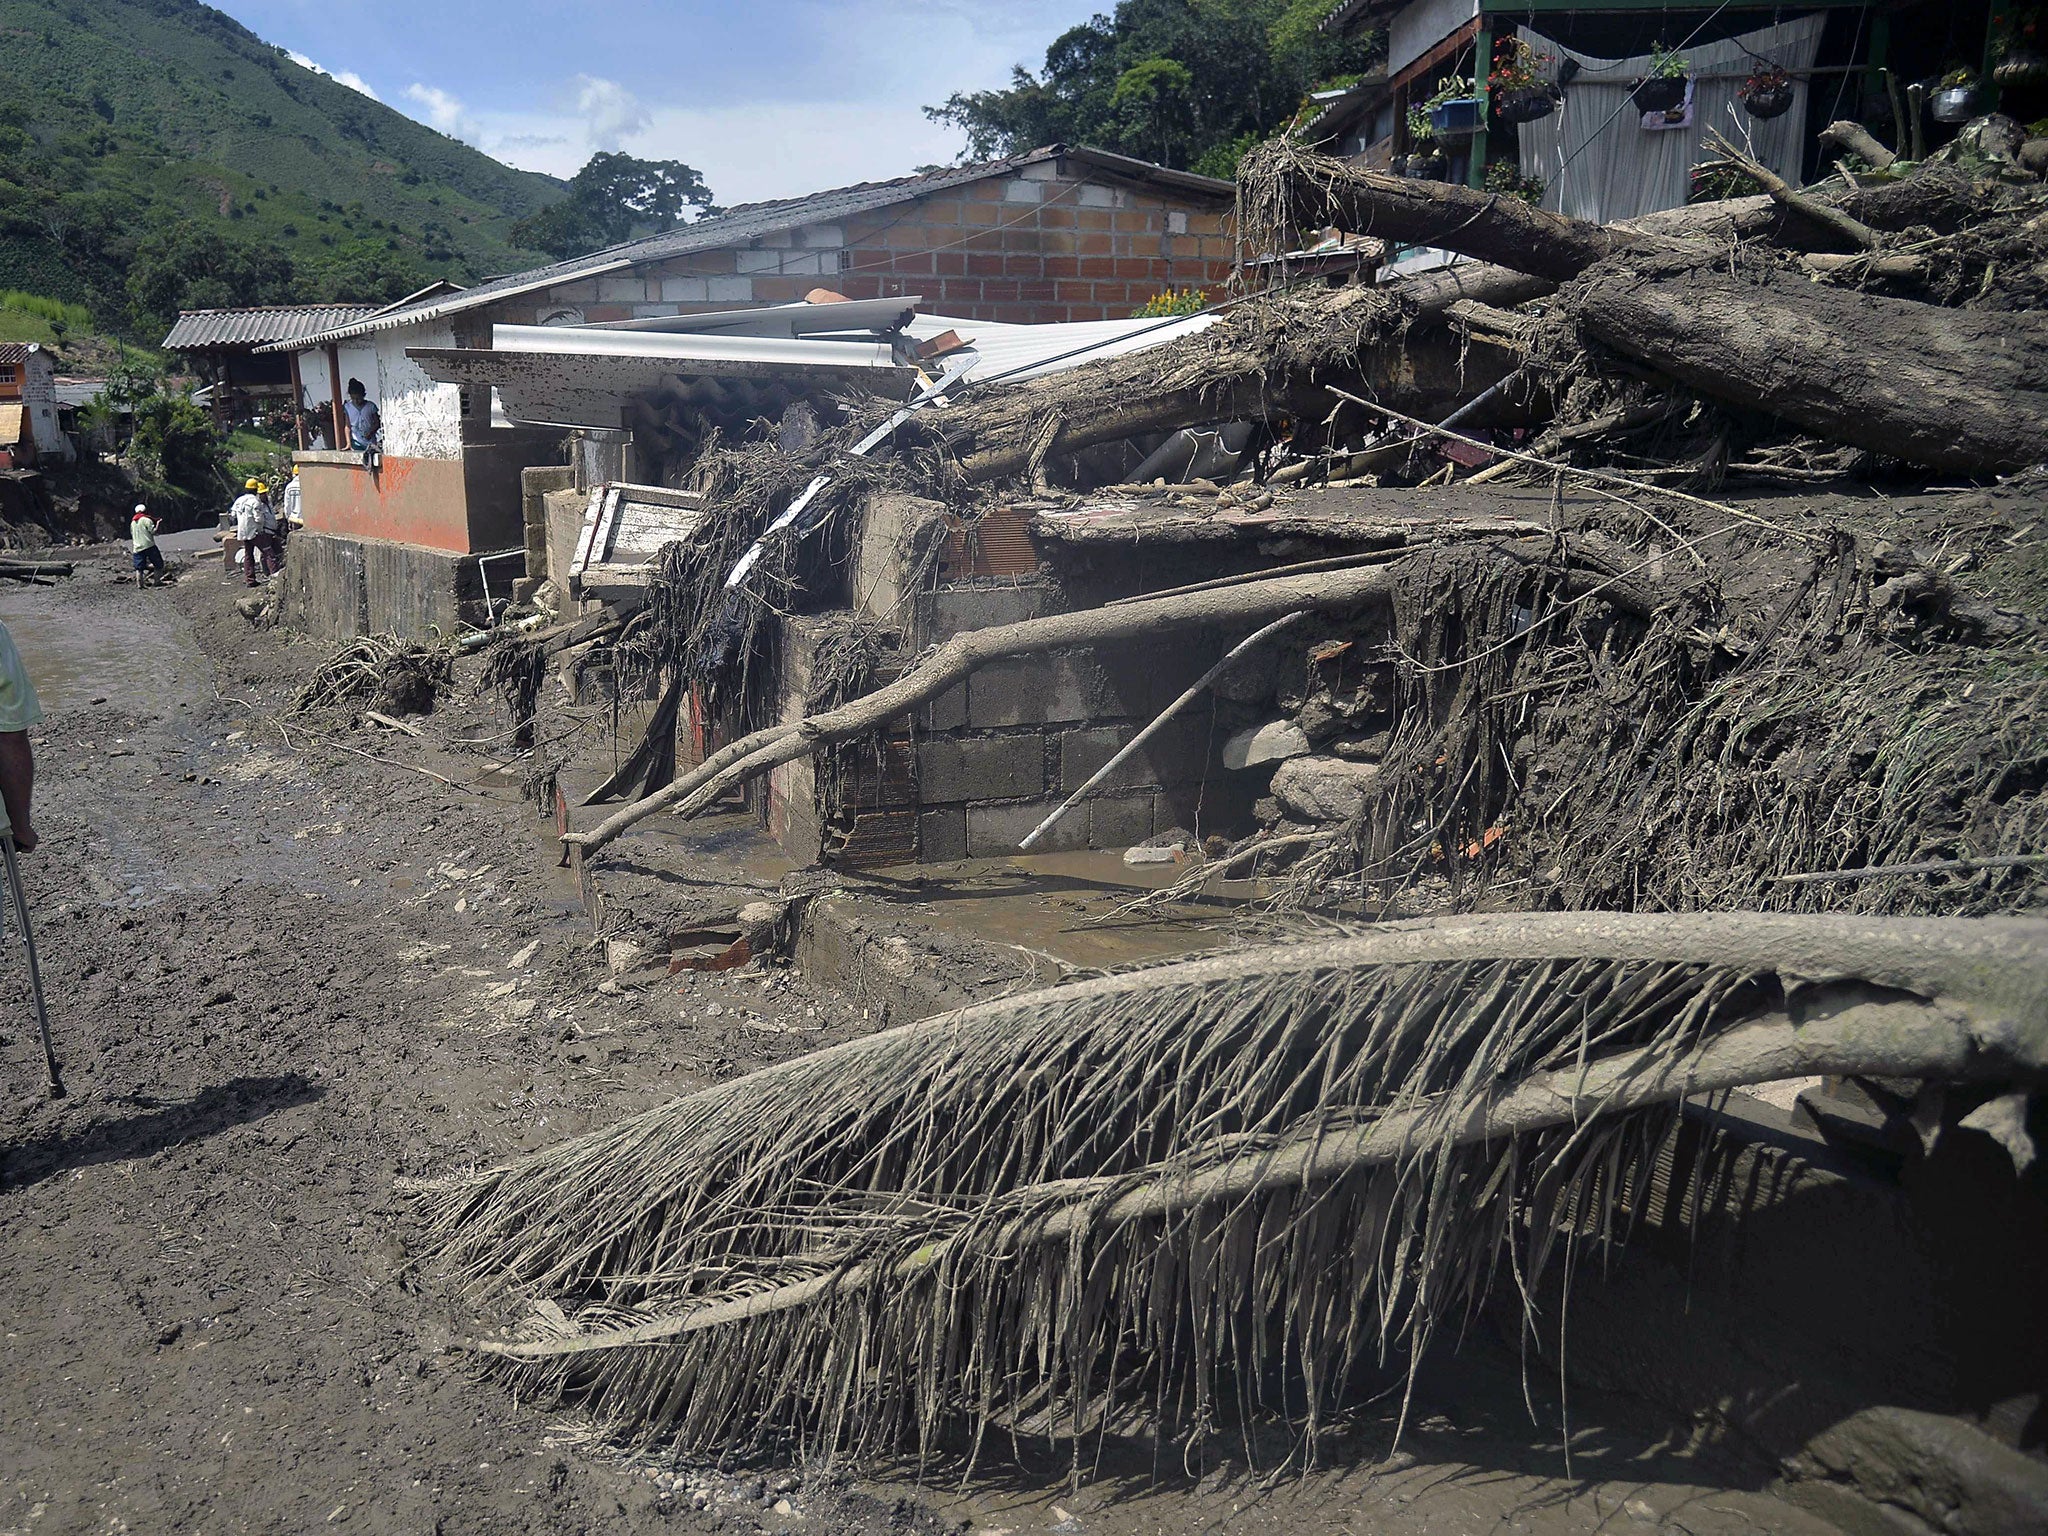 The mudslide destroyed villages in Salgar